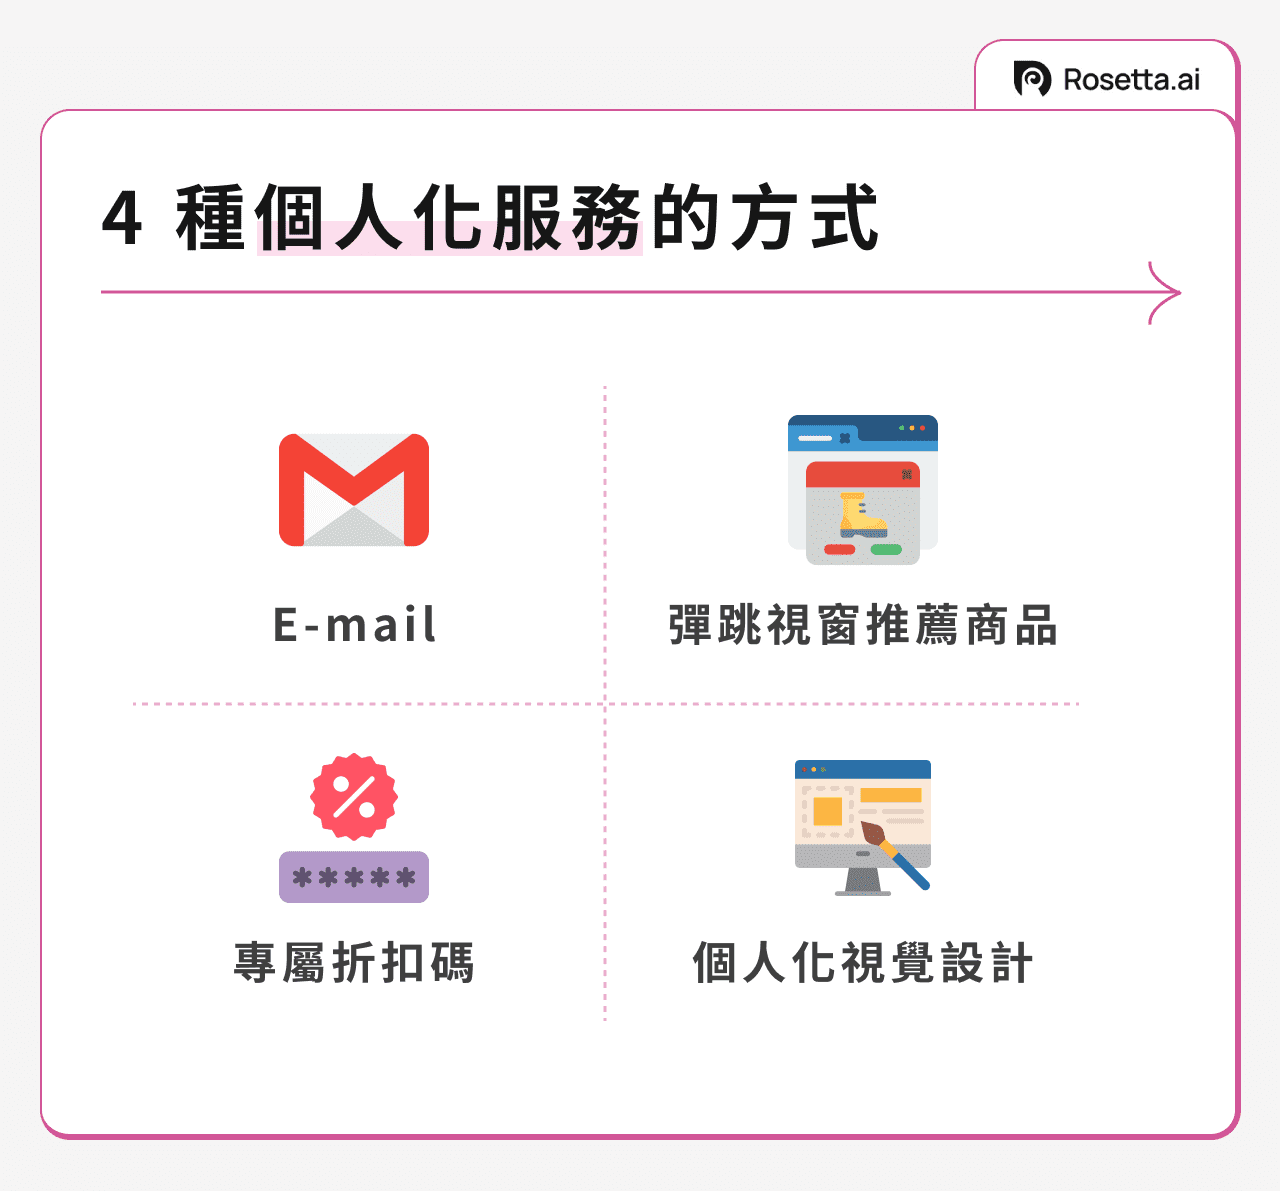 4 種個人化服務的方式：E-mail、彈跳視窗推薦商品、專屬折扣碼和個人化視覺設計